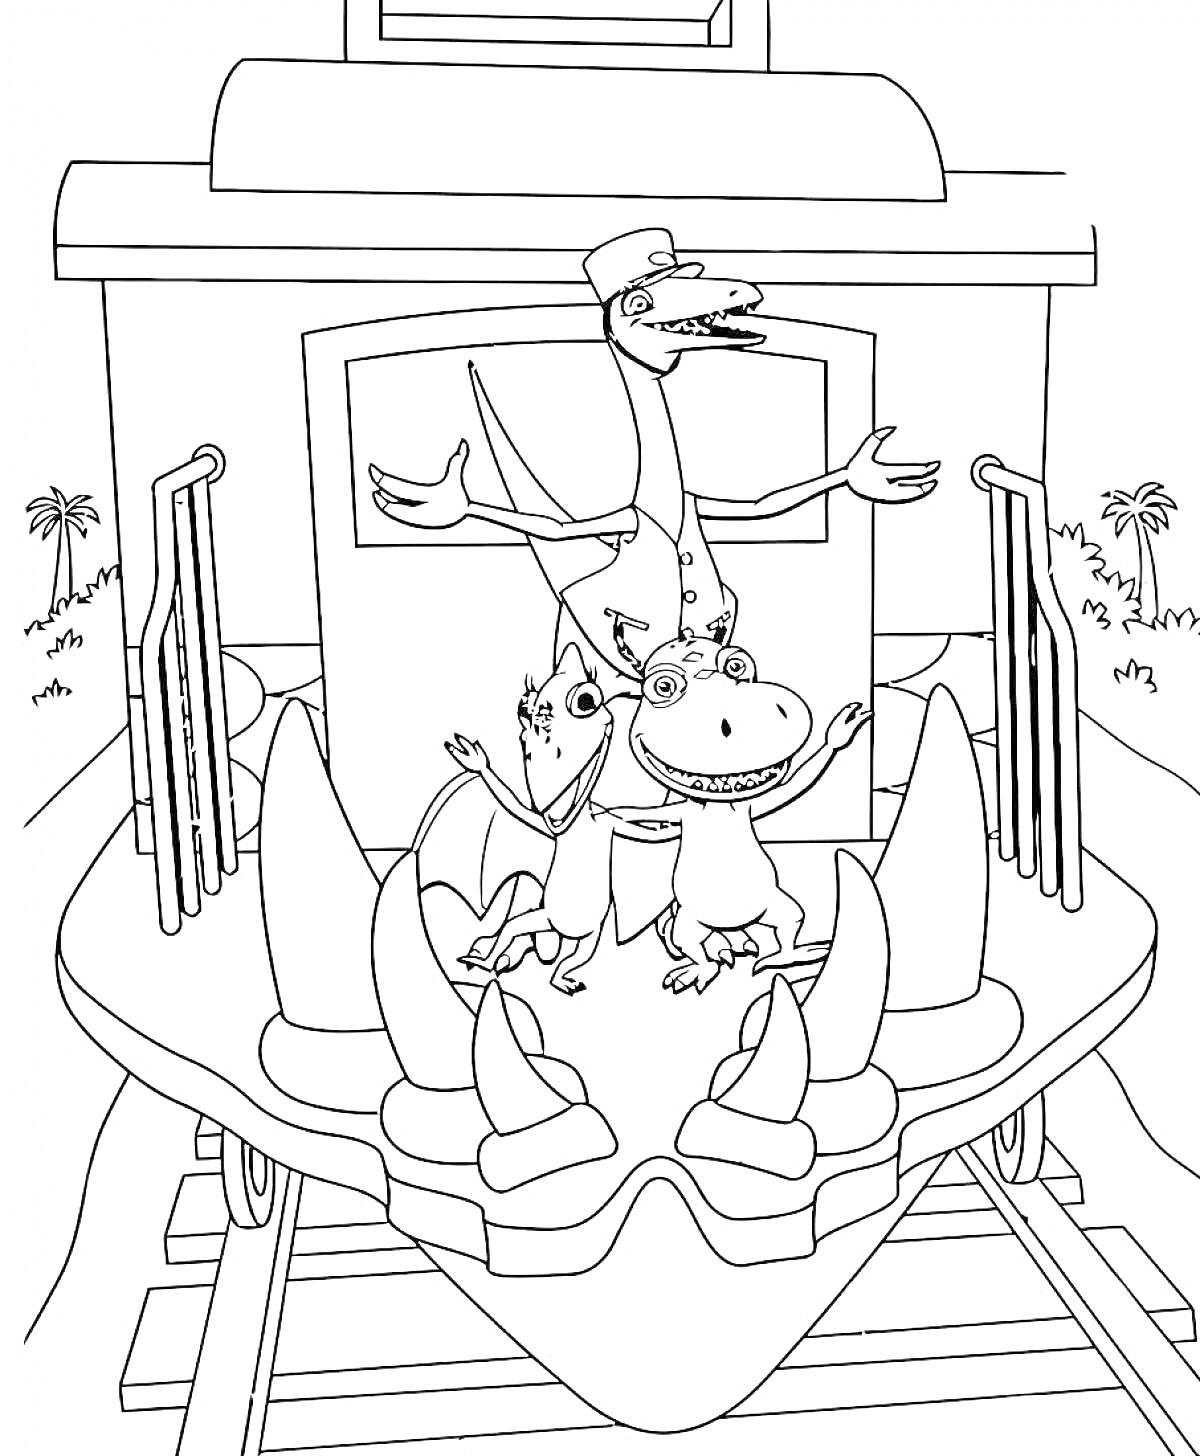 Динозавры на переднем вагоне поезда динозавров, включая кондуктора-птерозавра и его помощников, фон с пальмами